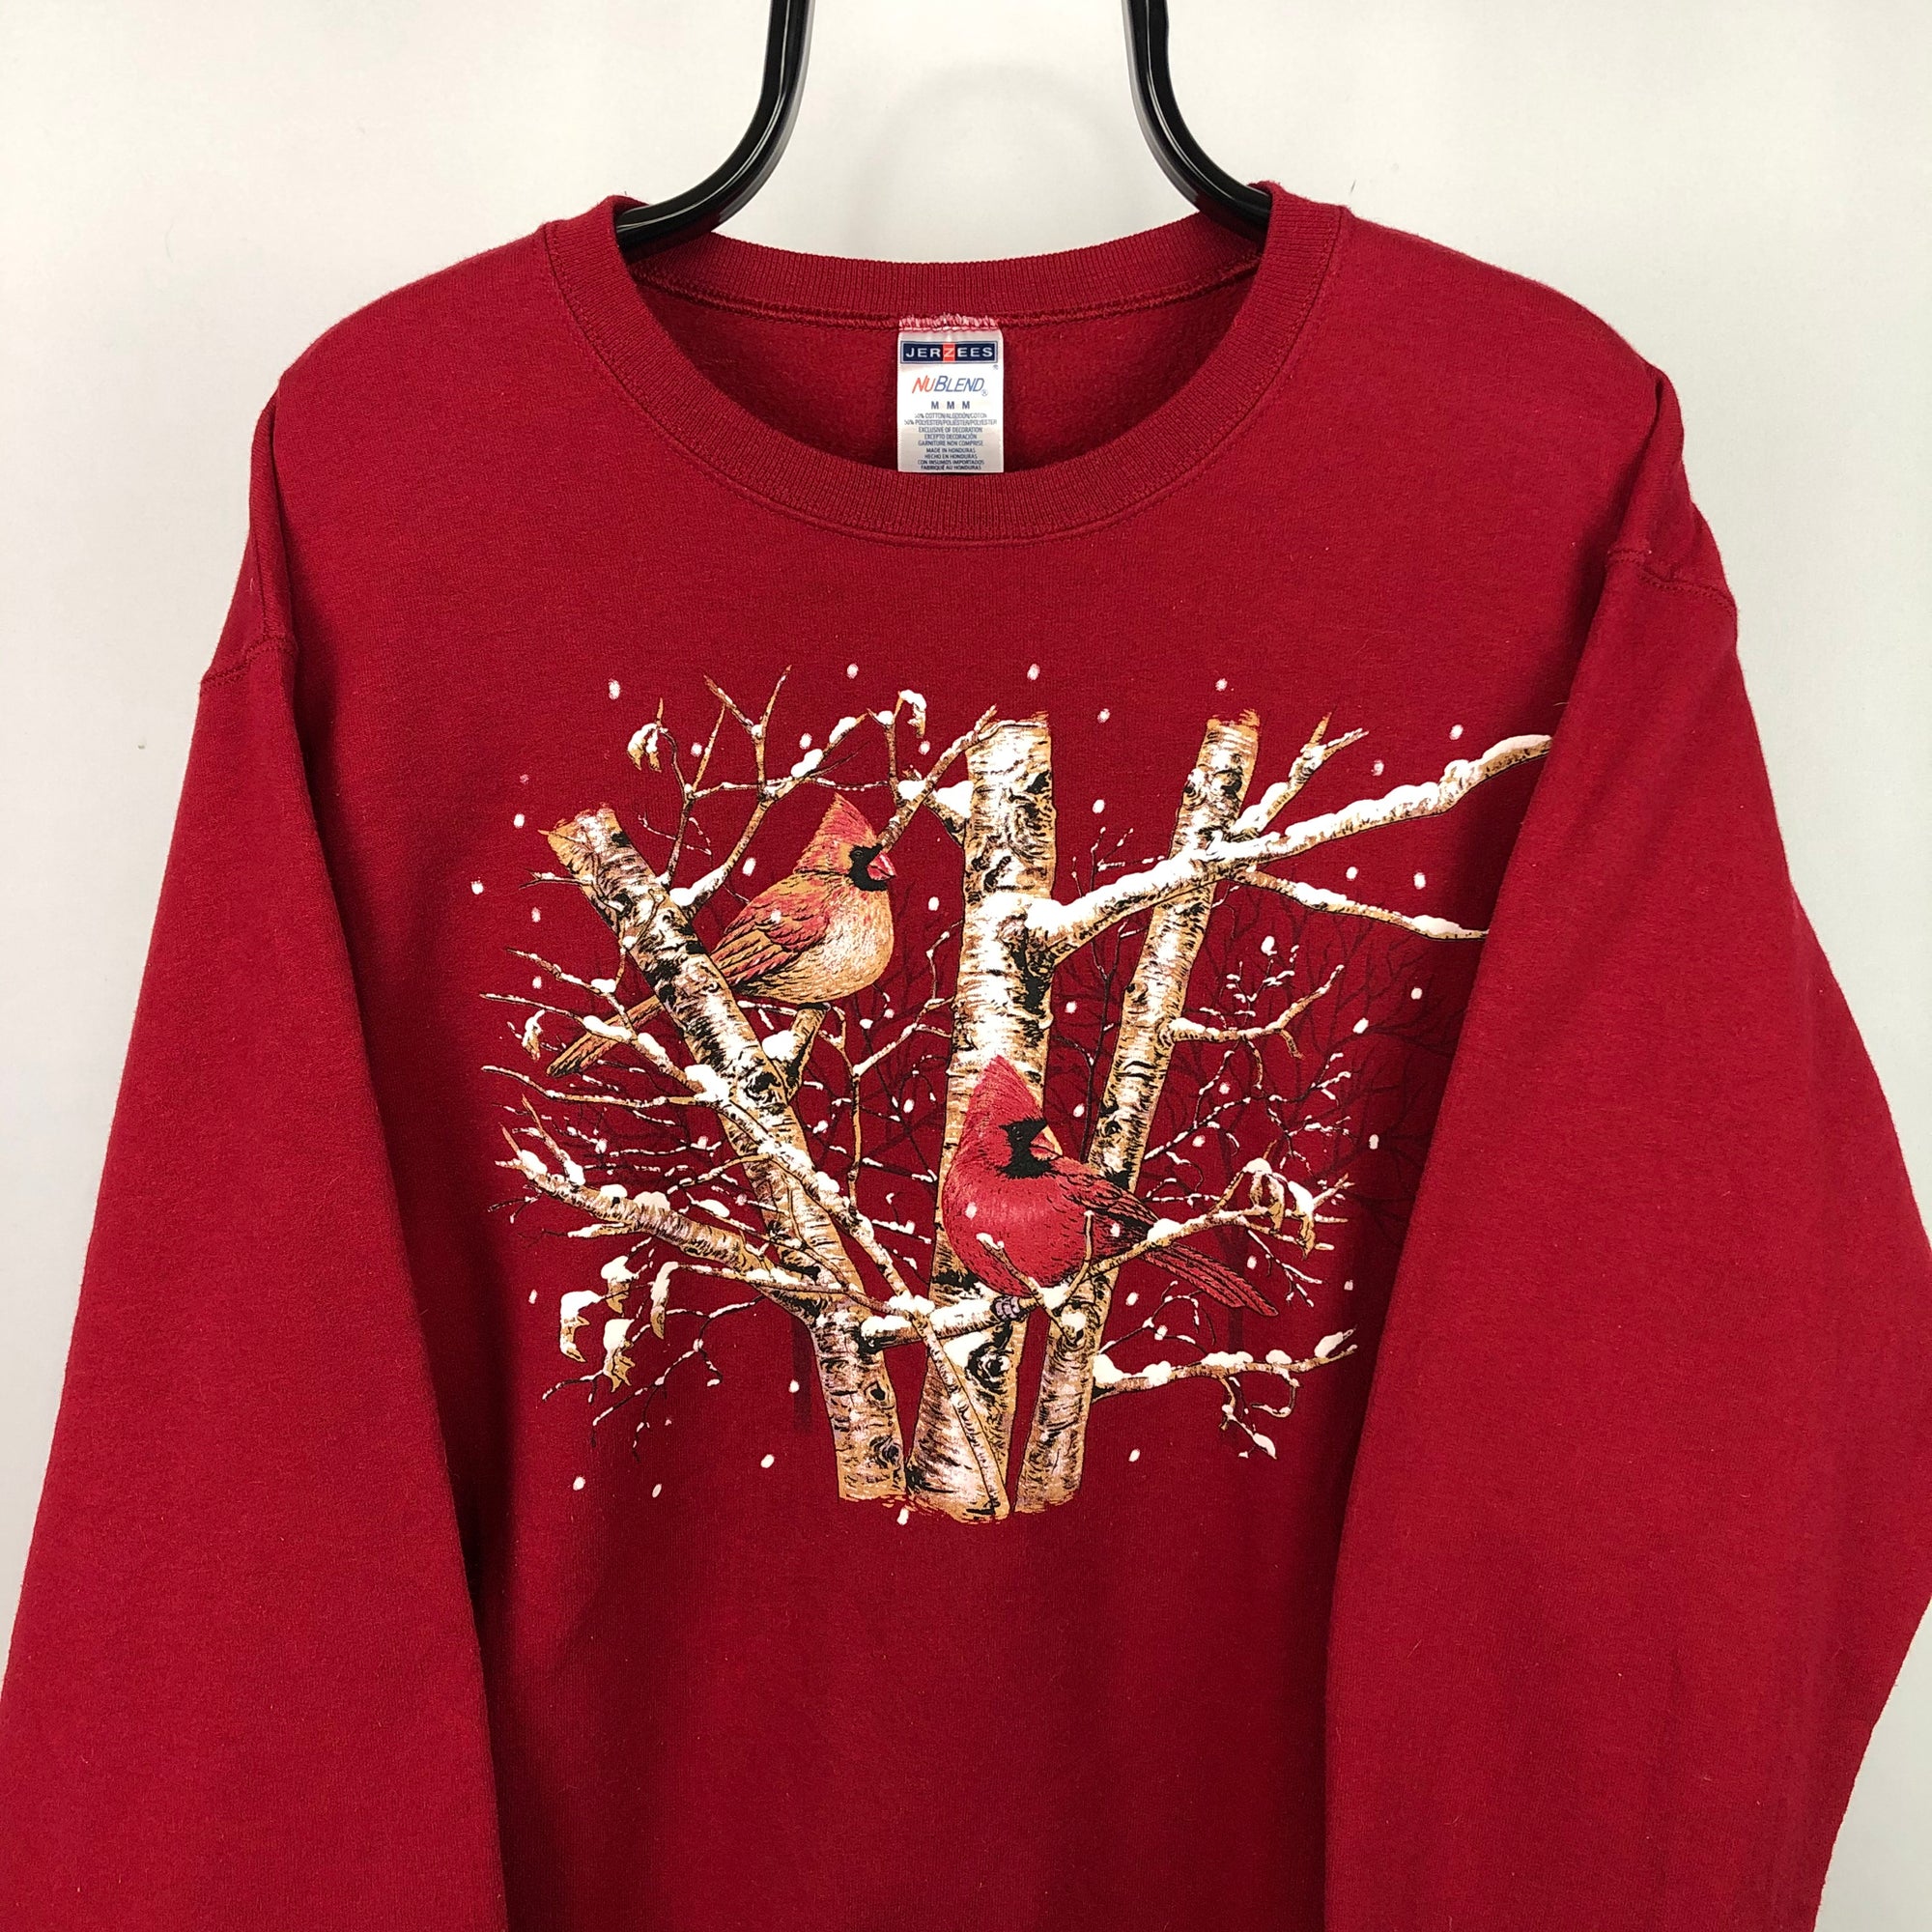 Vintage Winter Birds Print Sweatshirt in Red - Men's Medium/Women's Large